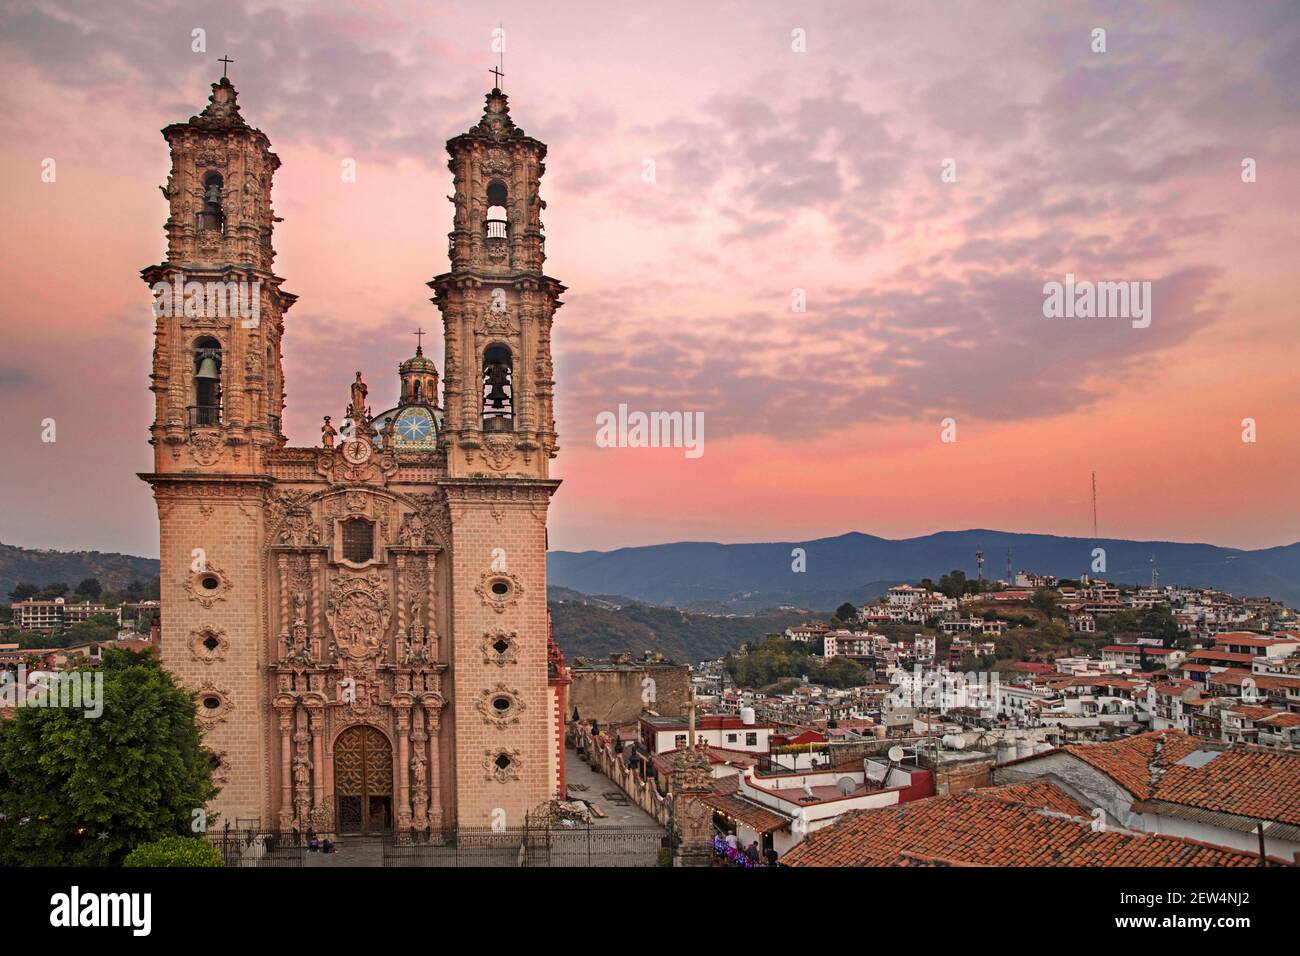 Église Santa Prisca du XVIIIe siècle avec ses tours jumelles Churrigueresque dans le centre-ville colonial de Taxco de Alarcón au coucher du soleil, Guerrero, Mexique Banque D'Images